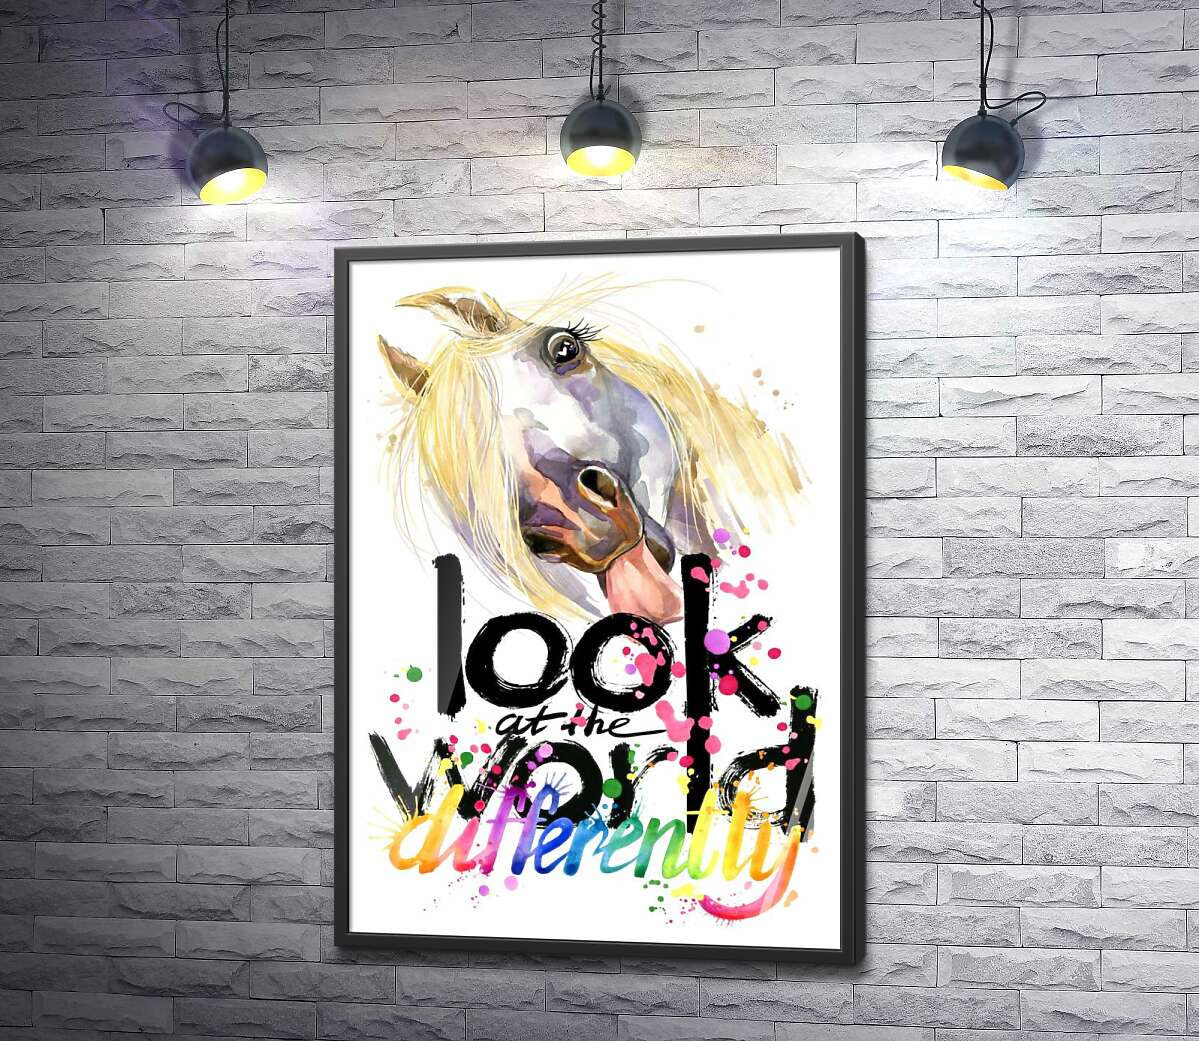 постер Напис "look at the world differently" та білий кінь, що показує язик